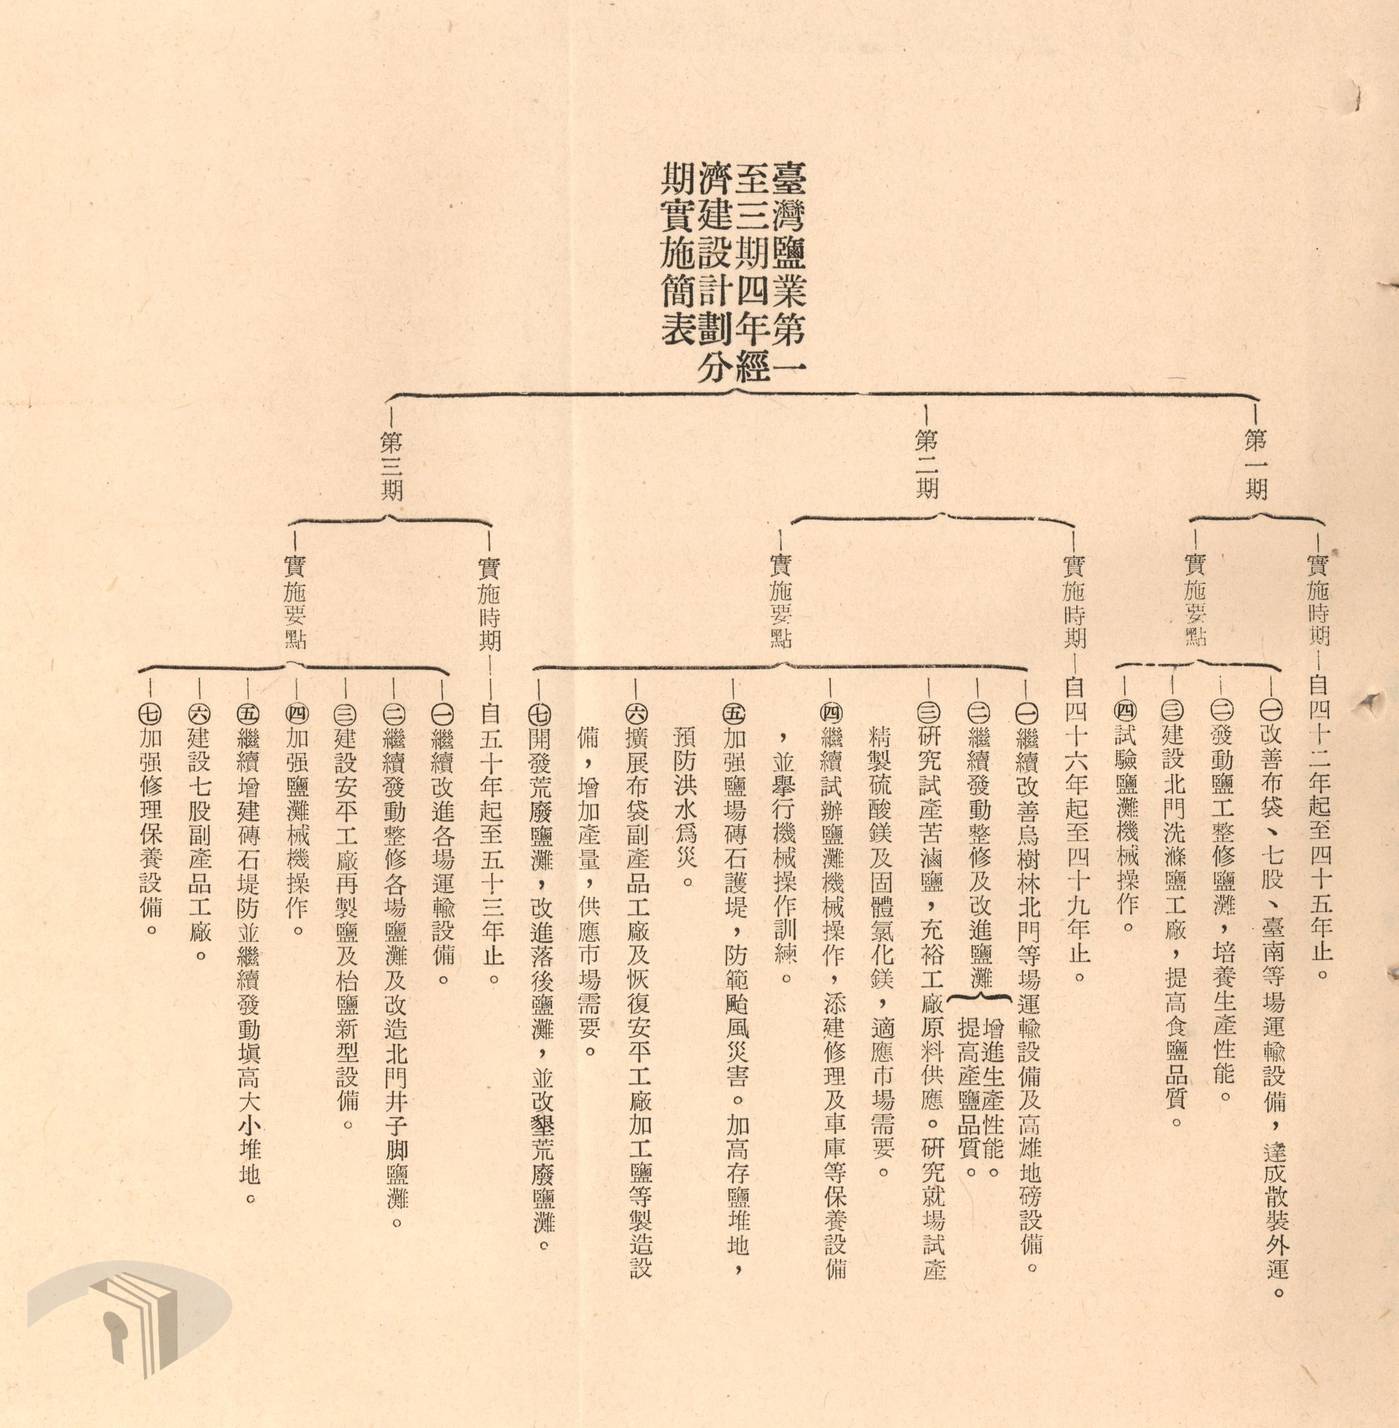 圖1 1953-1964年臺灣鹽業計畫